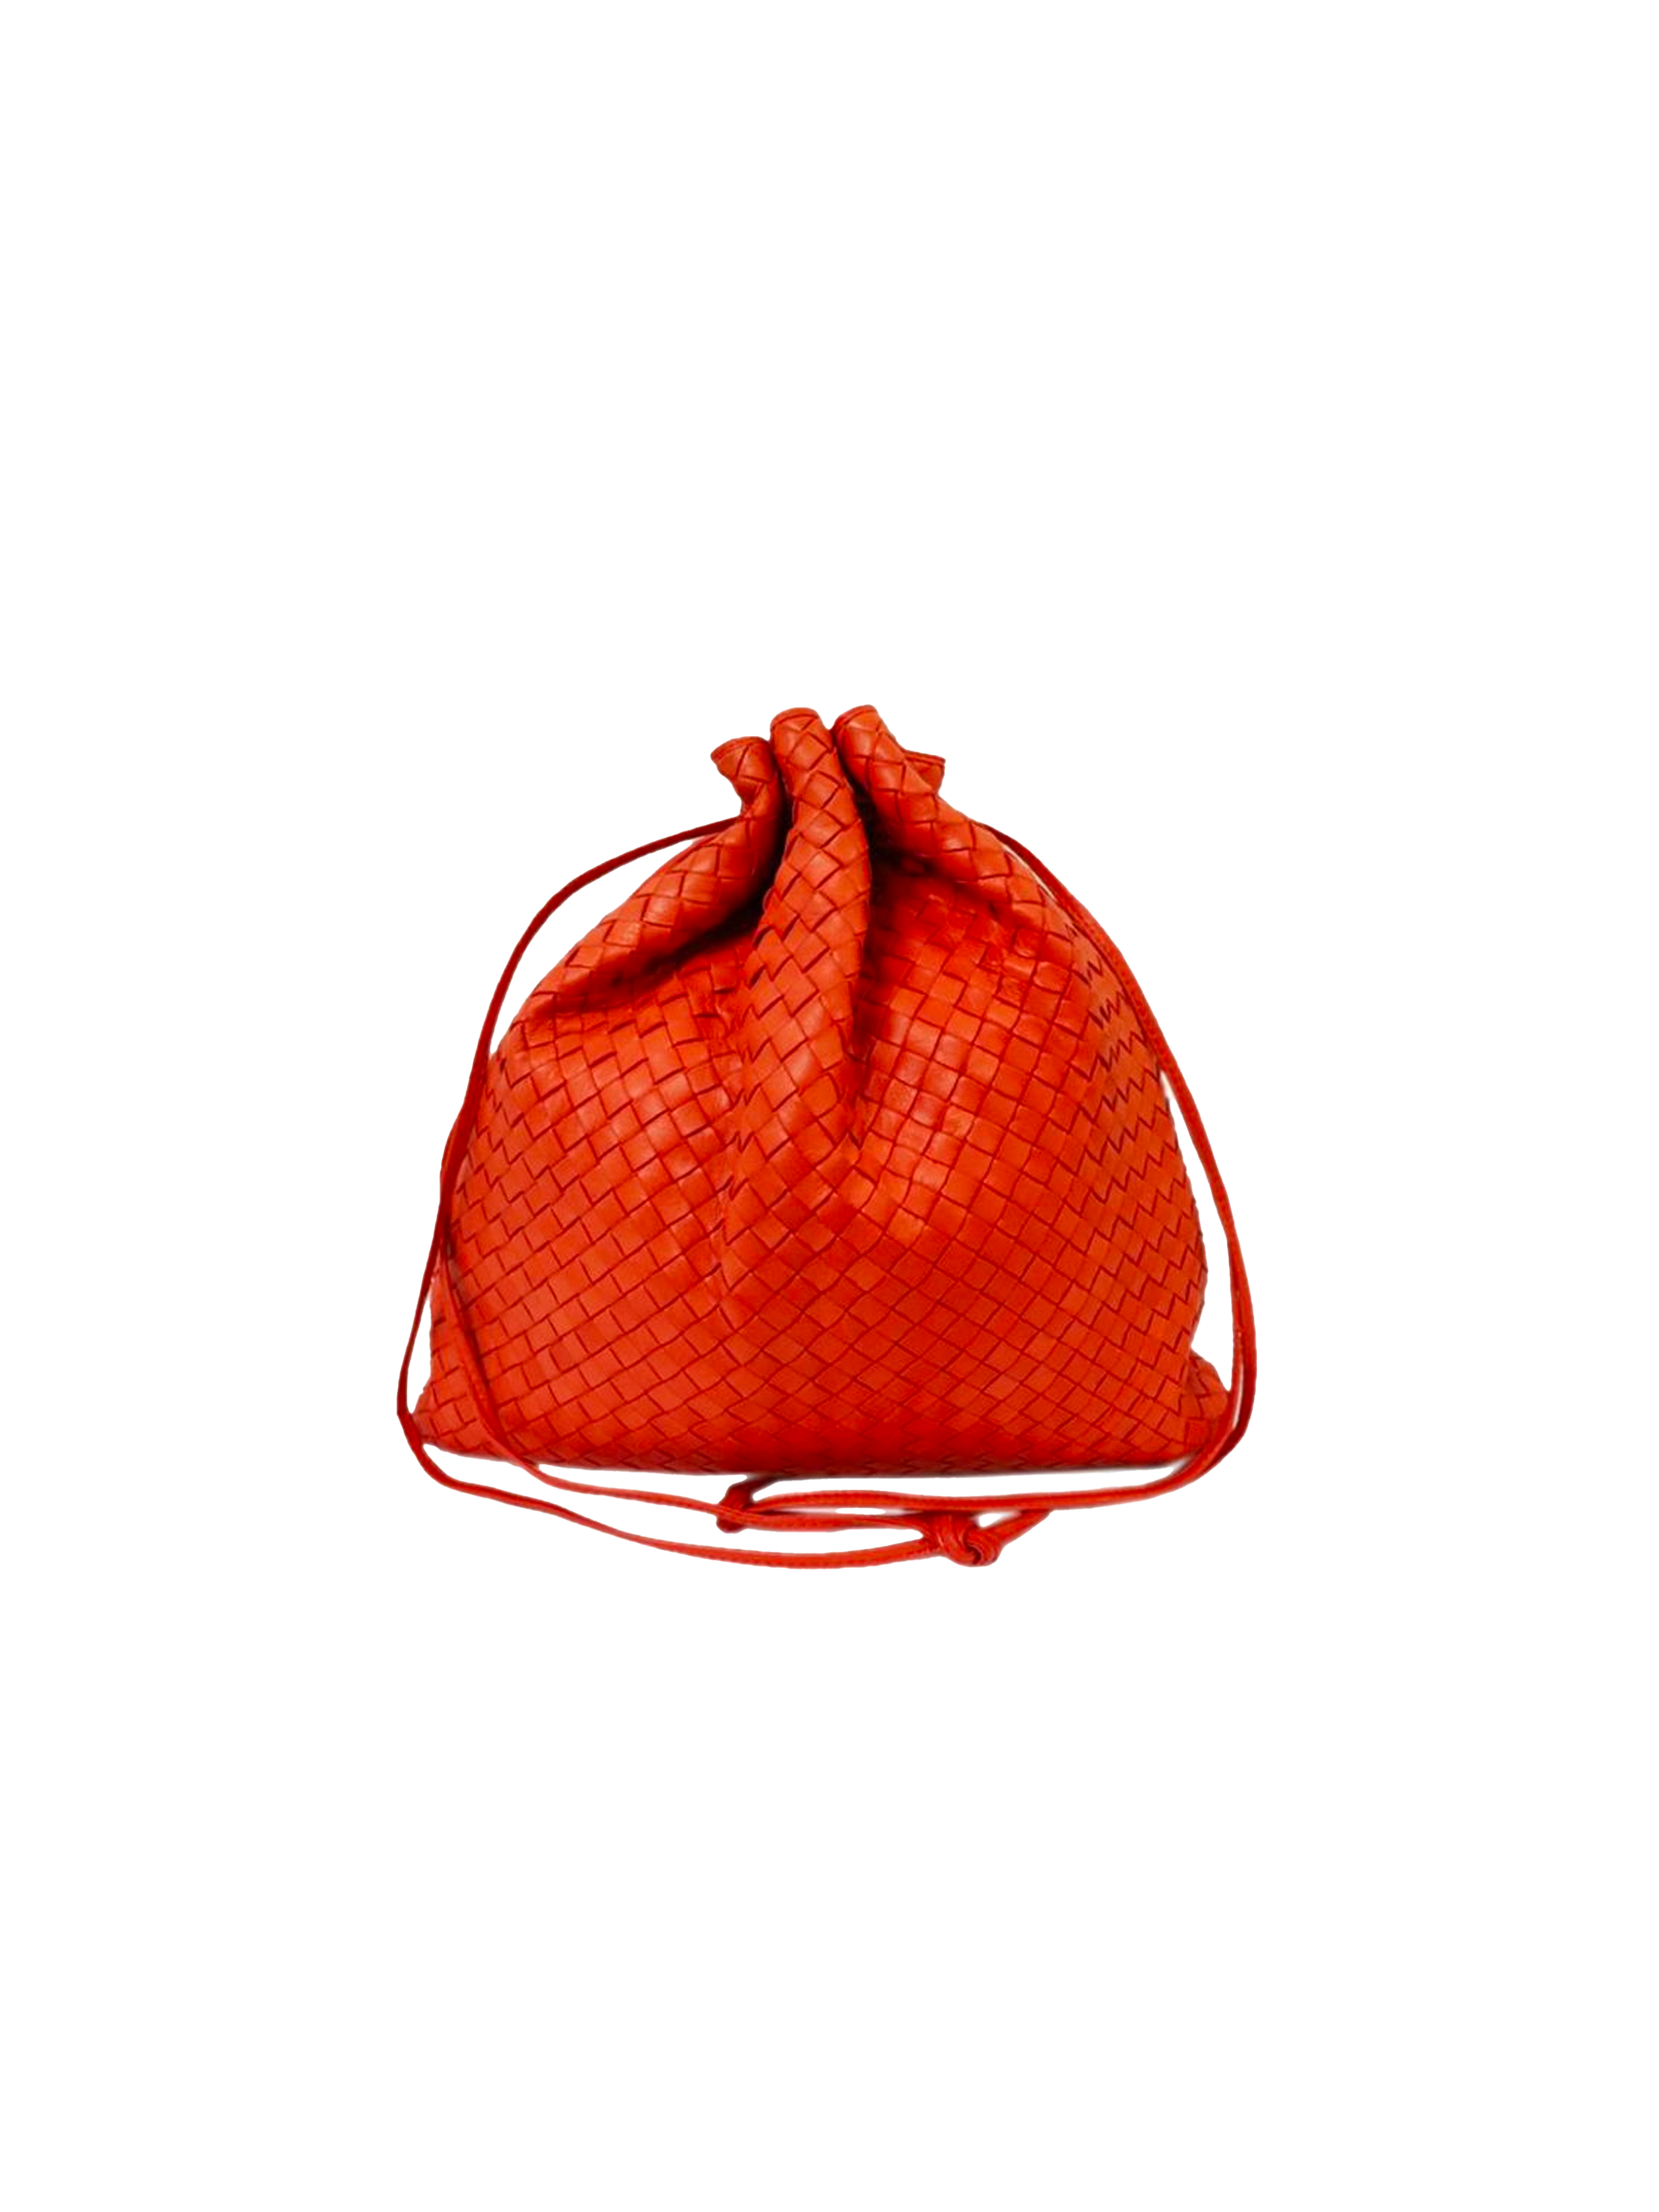 Bottega Veneta 2010s Intrecciato Red Leather Drawstring Bag